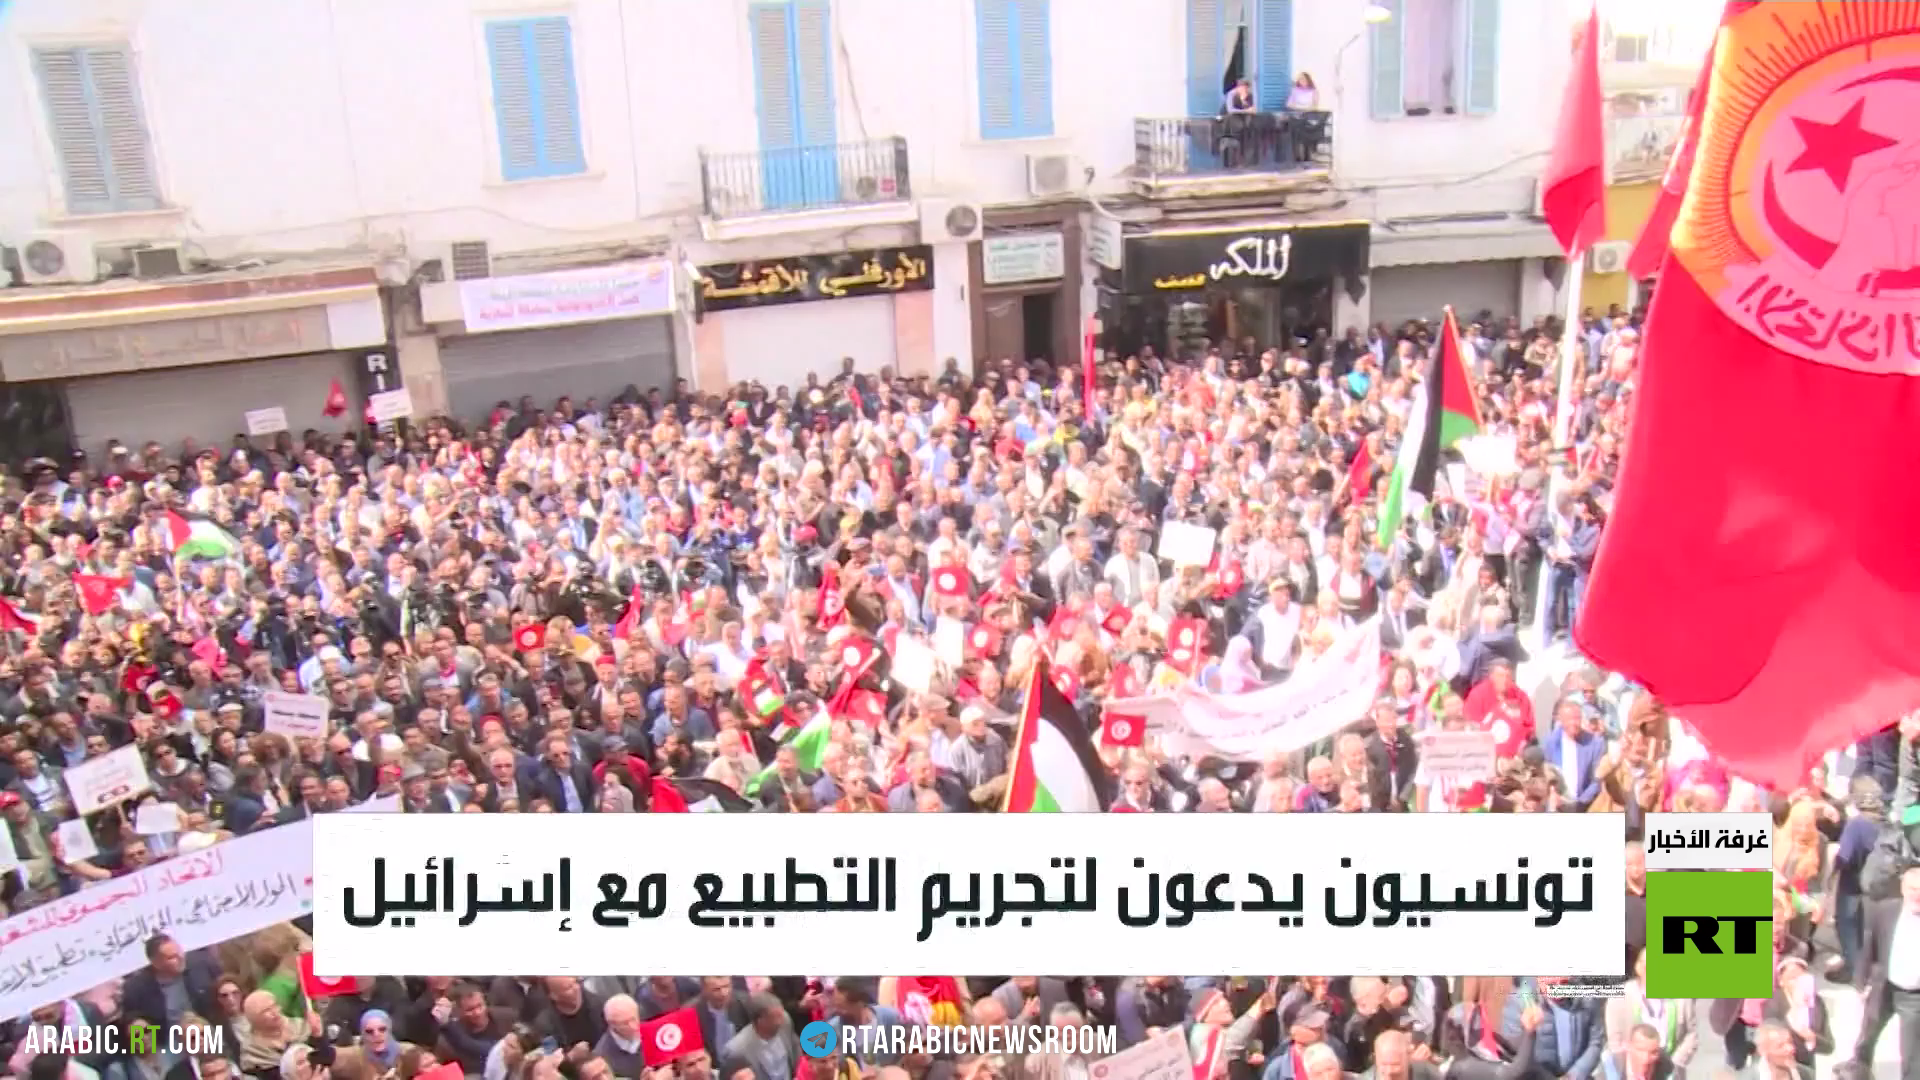 مسيرة العمال في تونس تؤكد على دعم غزة وتطالب بسن قانون يجرم التطبيع مع إسرائيل